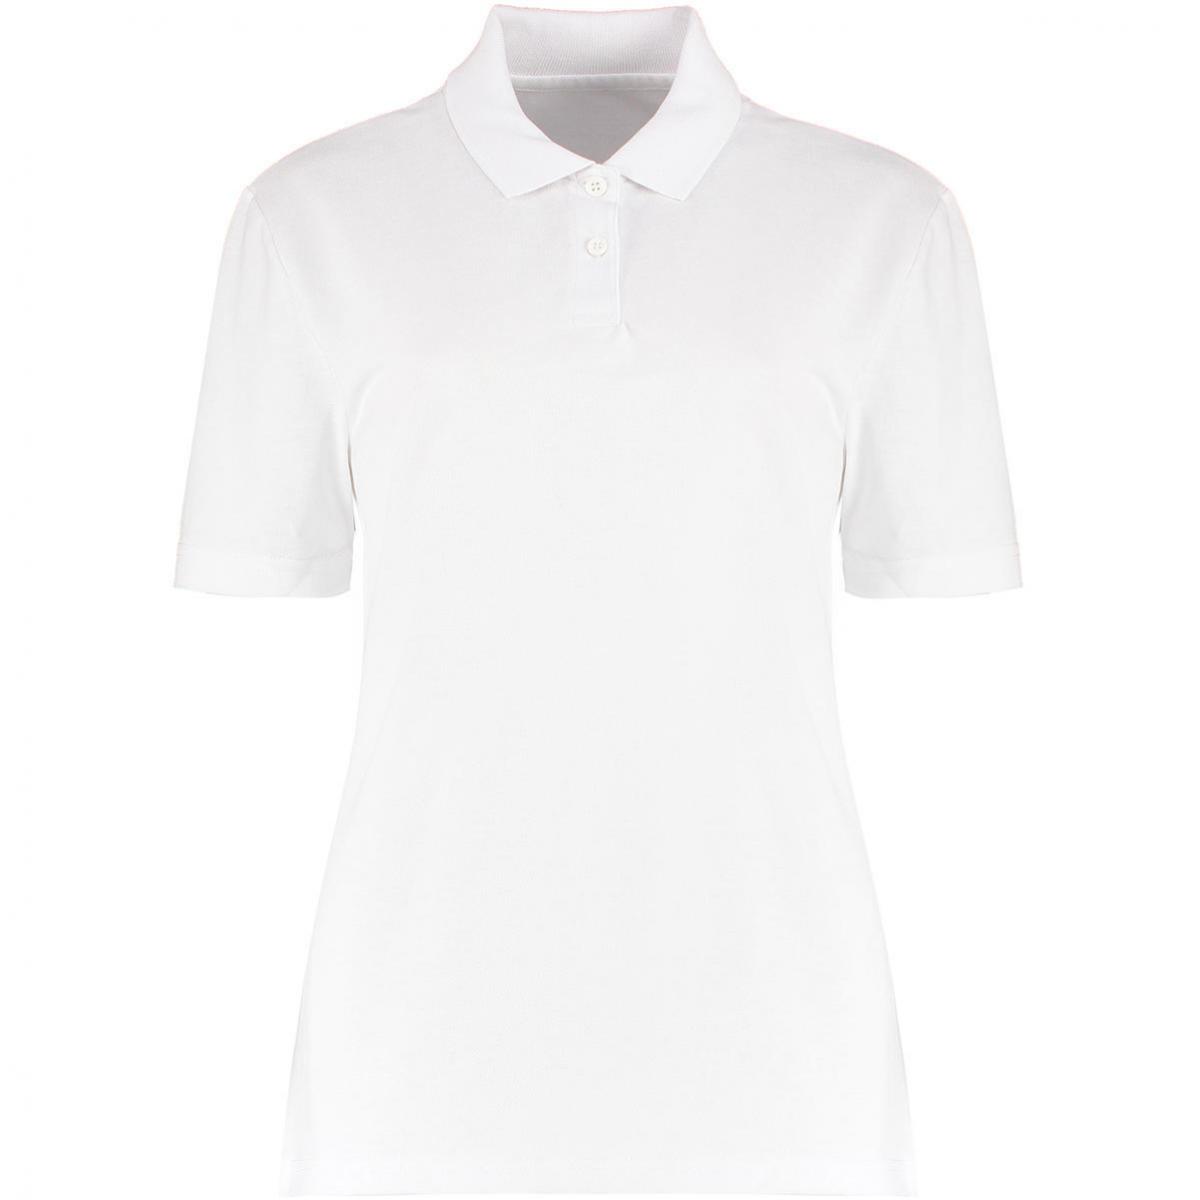 Hersteller: Kustom Kit Herstellernummer: KK722 Artikelbezeichnung: Women's Regular Fit Workforce Poloshirt für Damen Farbe: White